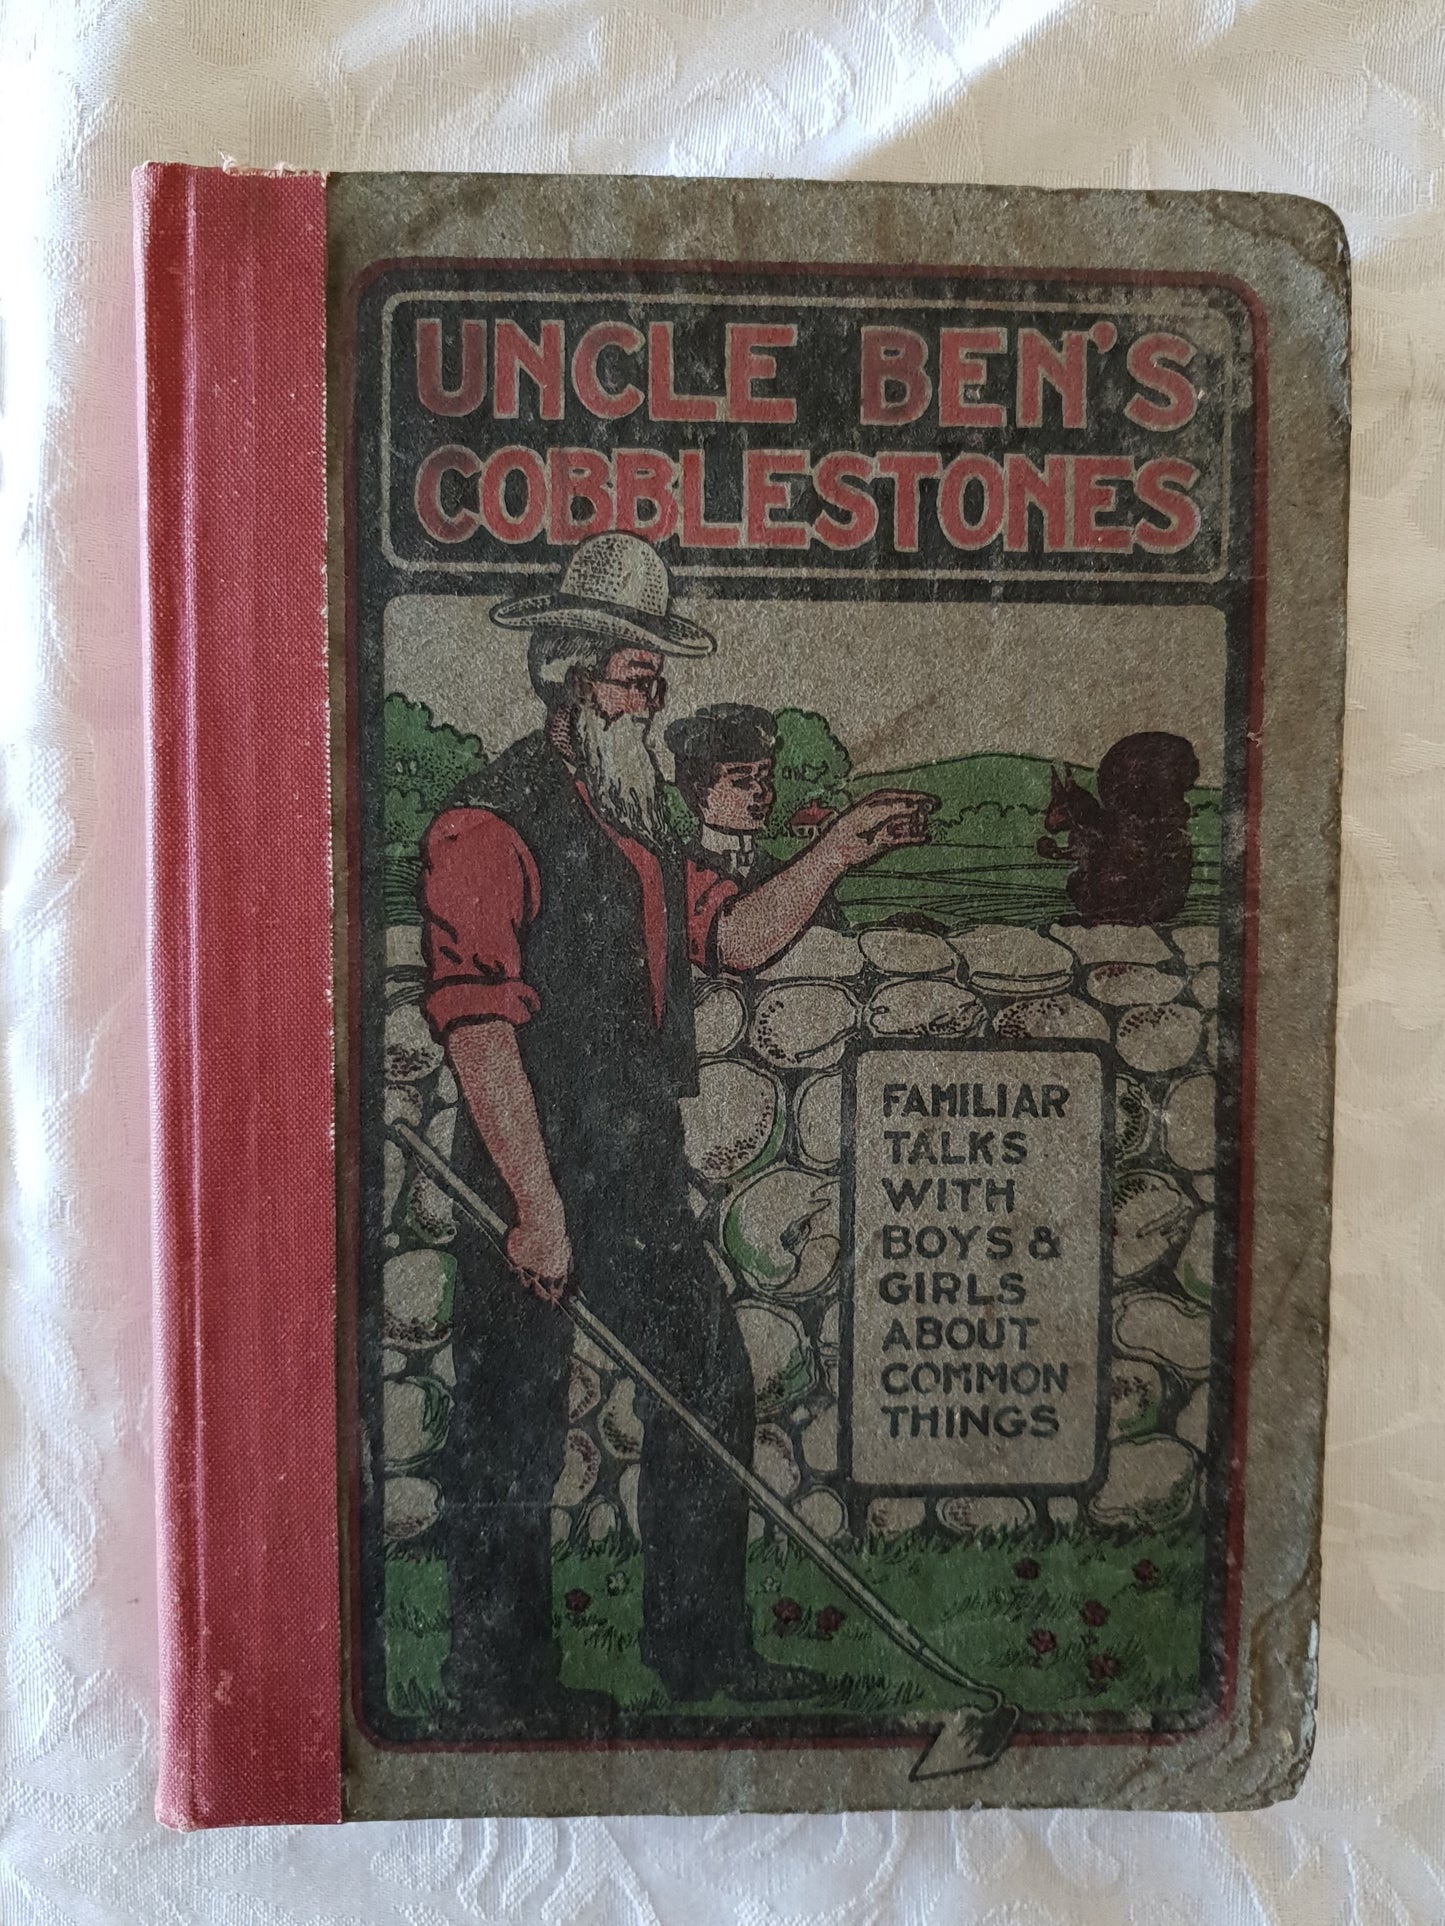 Uncle Ben's Cobblestones by W. H. B. Miller